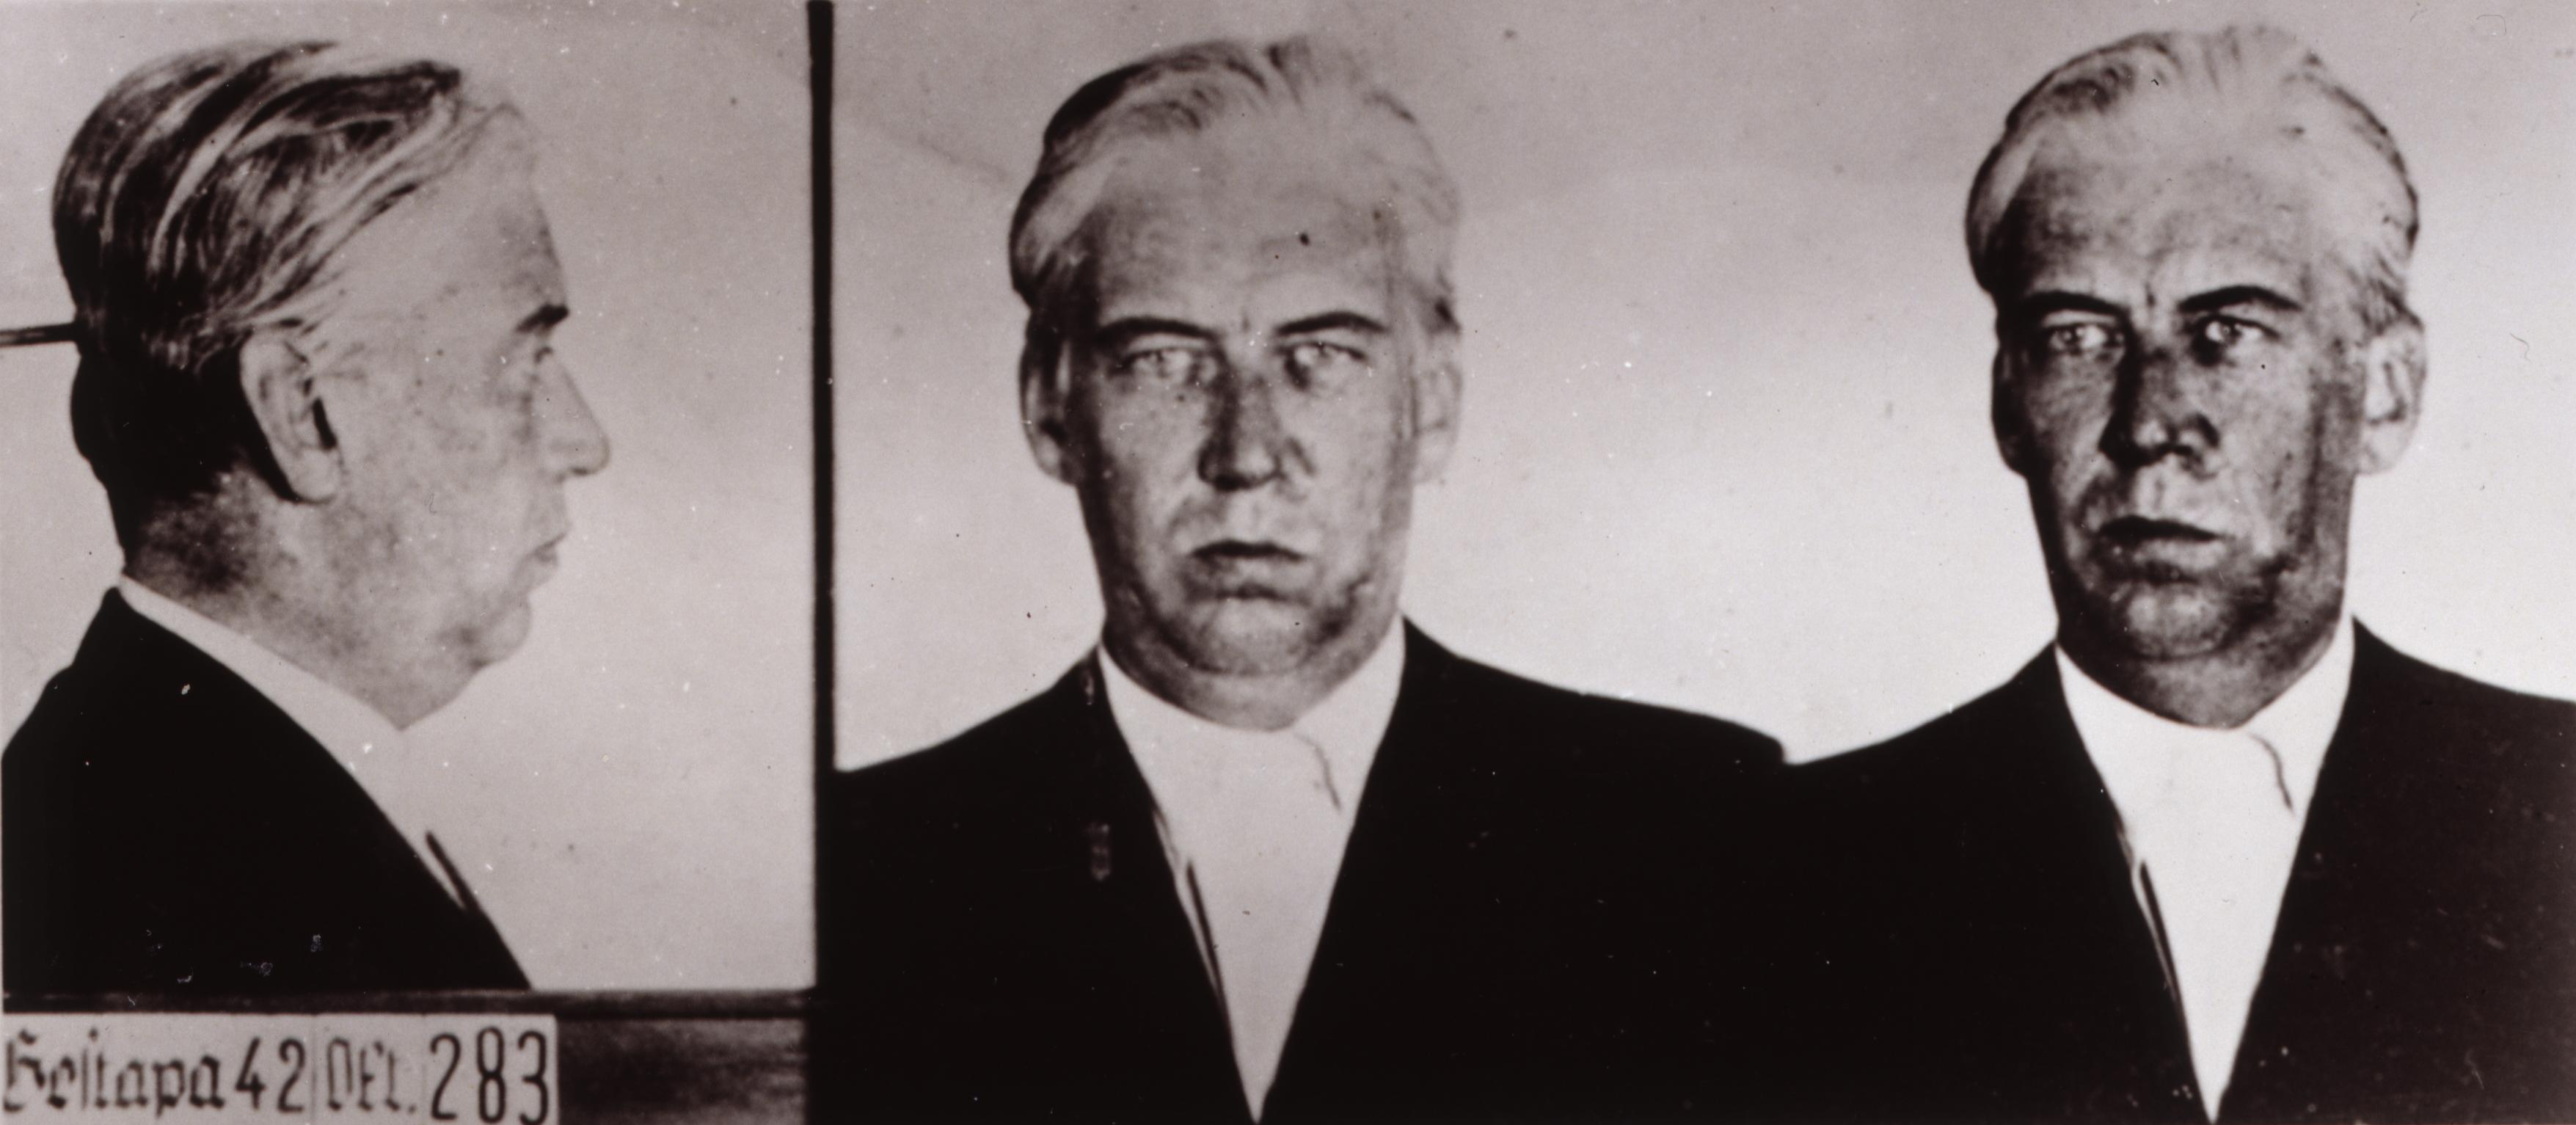 Foto: Scheliha, Rudolf von - aufgenommen in der Haft, 1942